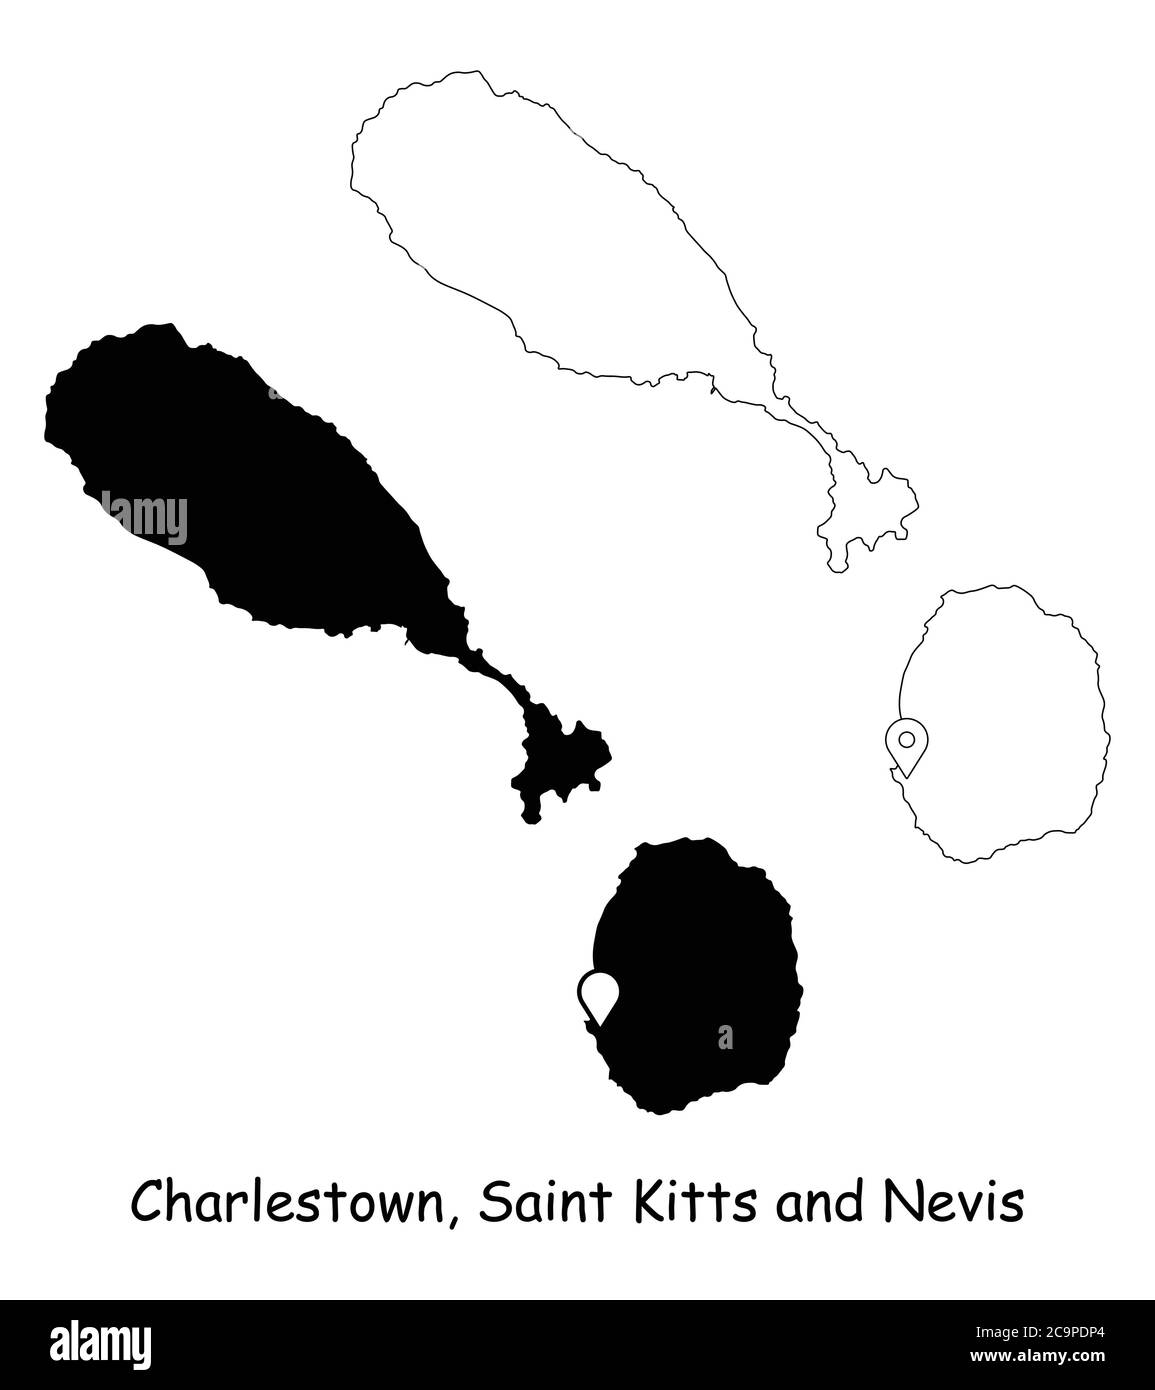 Charlestown, Saint-Kitts-et-Nevis. Carte détaillée du pays avec broche d'emplacement sur Capital City. Cartes silhouettes et vectorielles noires isolées sur fond blanc Illustration de Vecteur